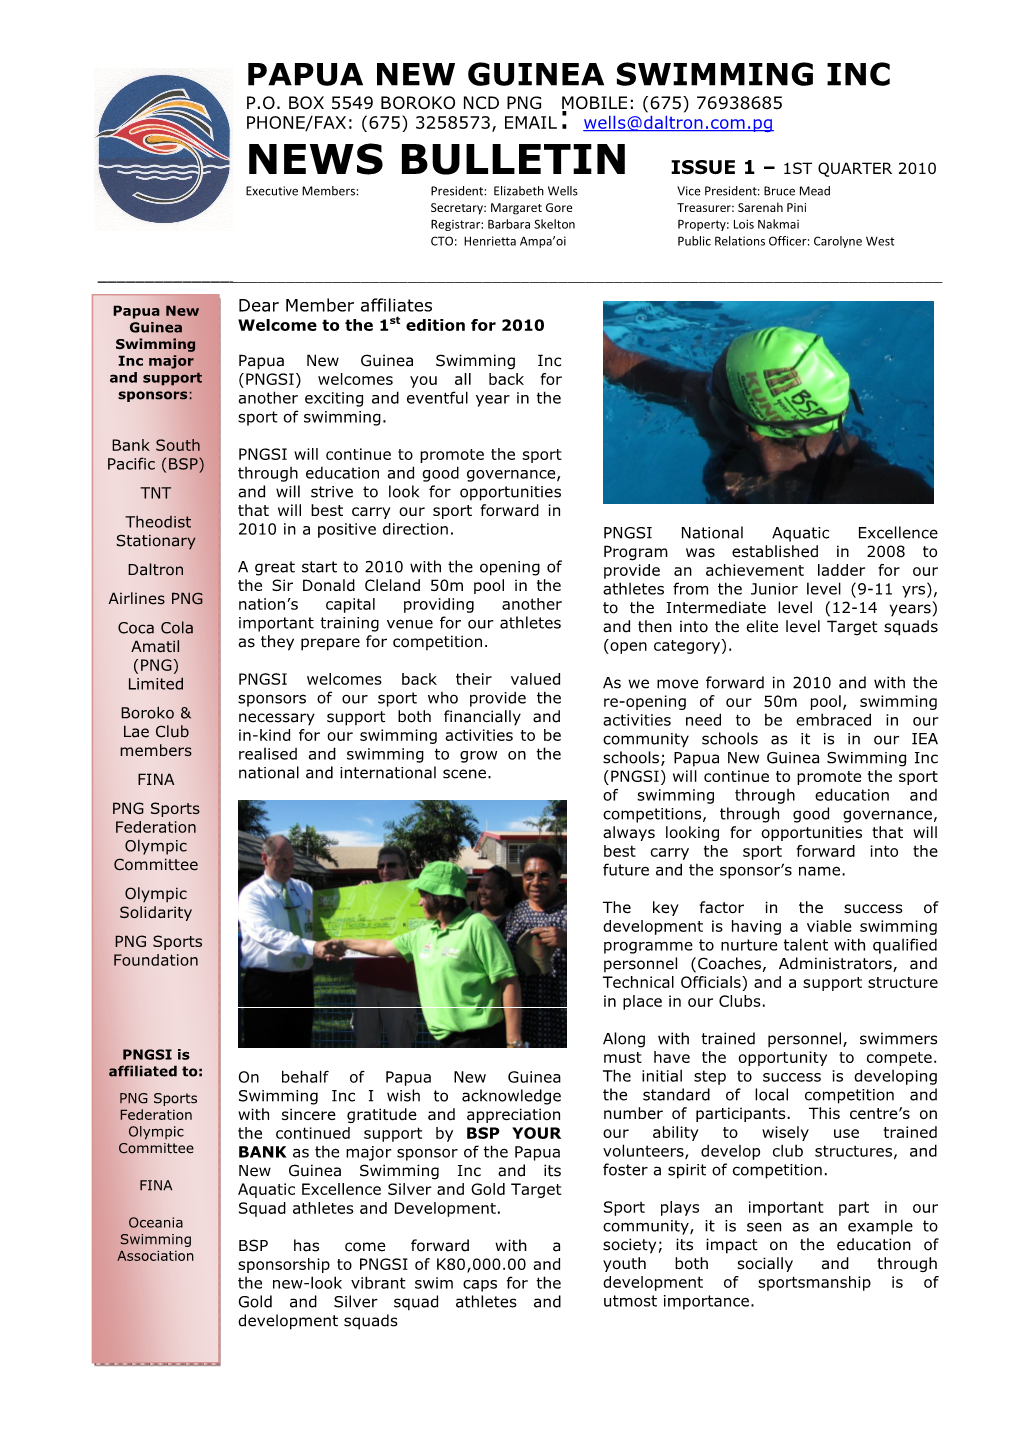 News Bulletin Issue 1 – 1St Quarter 2010